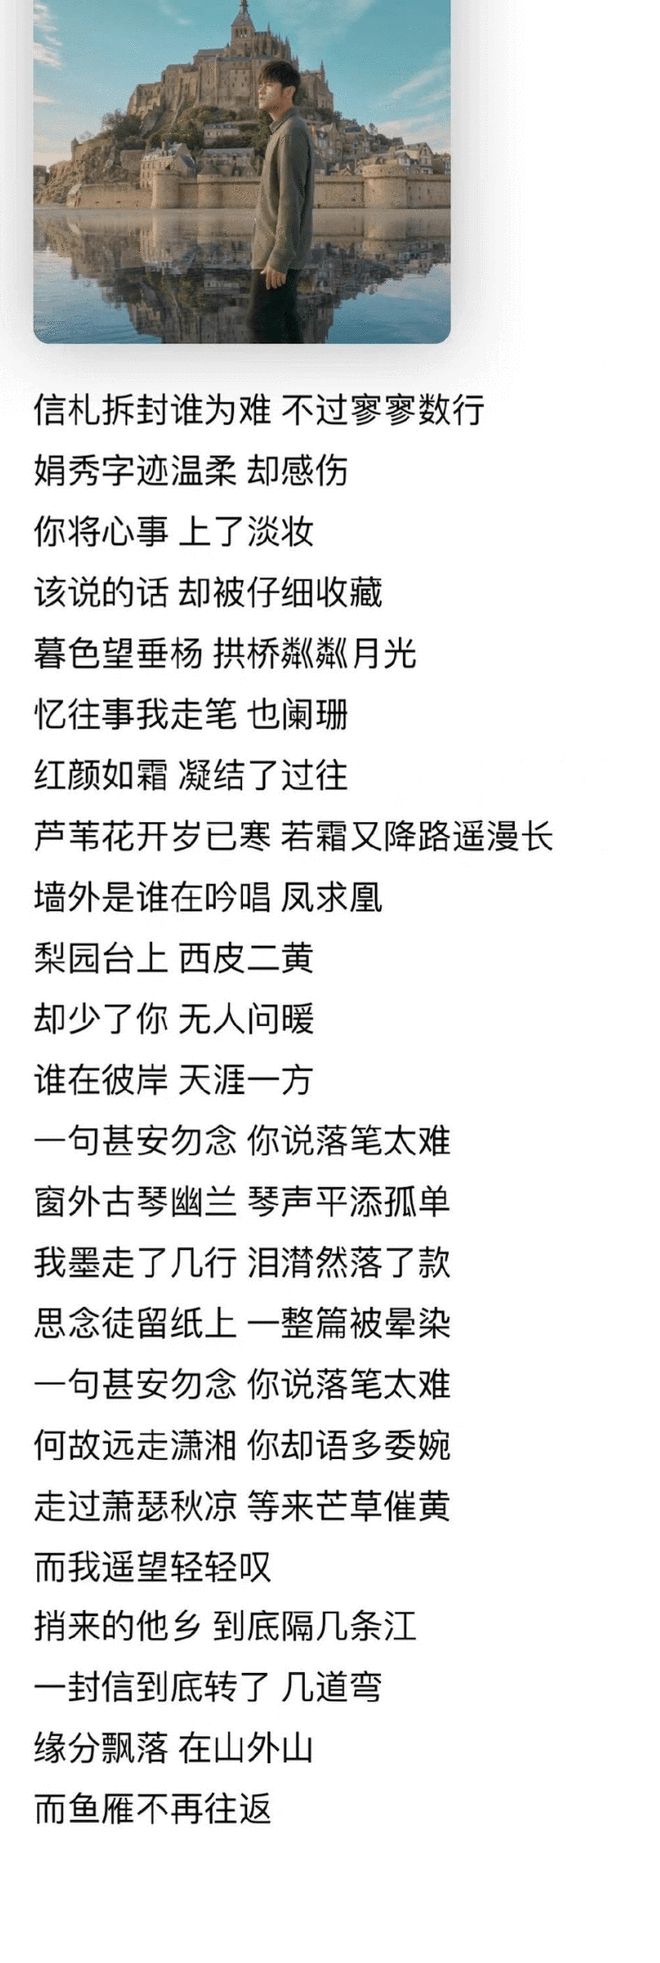 周杰伦新专辑提前上线引惊喜 中国风歌曲广受好评-万博·体育(ManBetX)